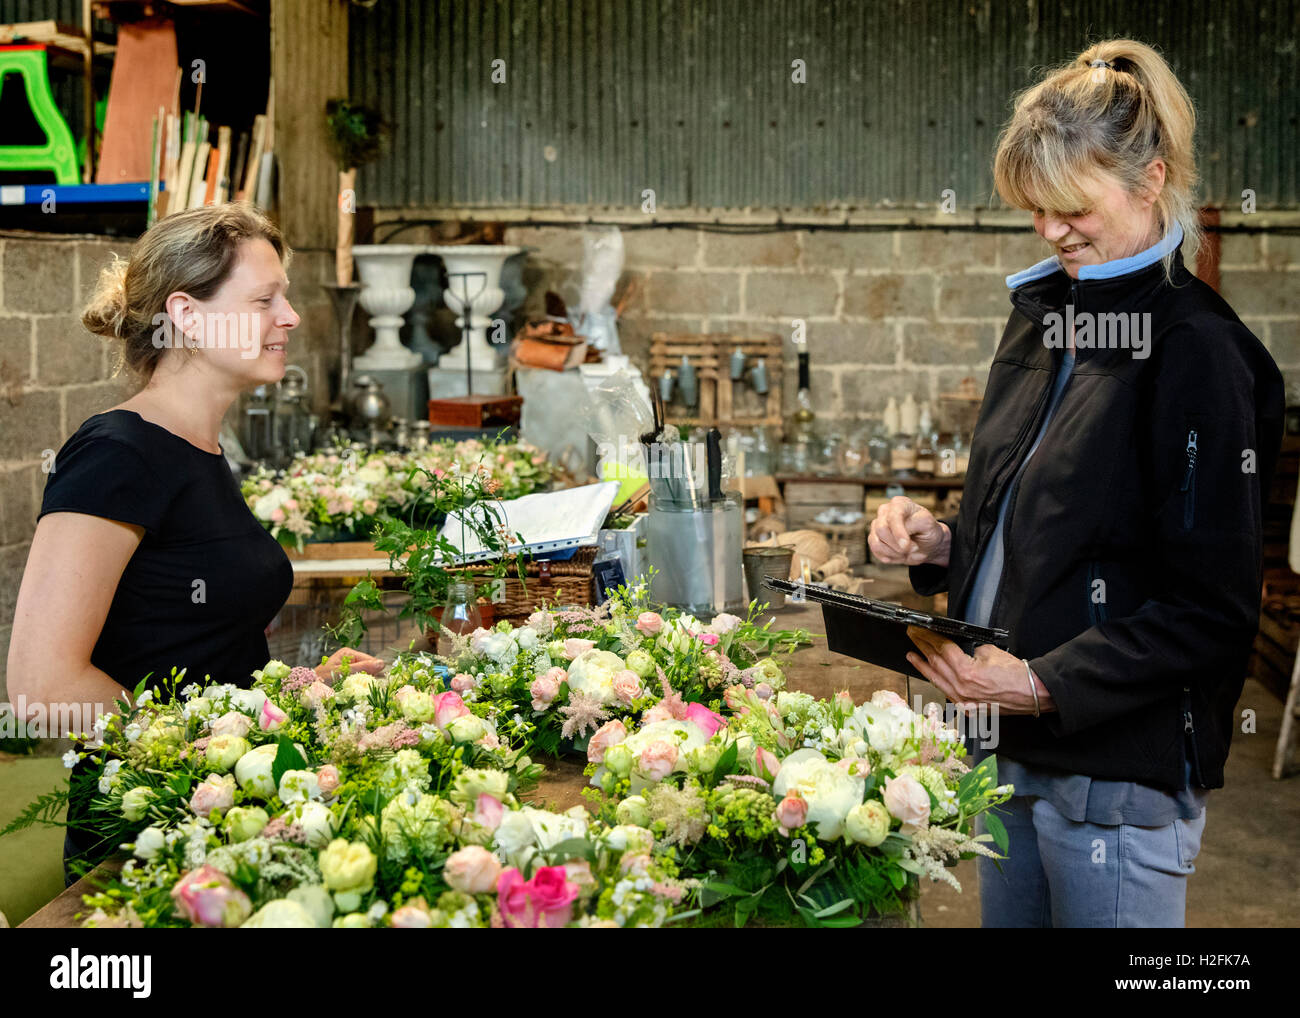 Deux femmes, l'un à l'aide d'une tablette numérique. Fleuristes à un établi décoration de table, des arrangements de fleurs roses et blanches. Banque D'Images